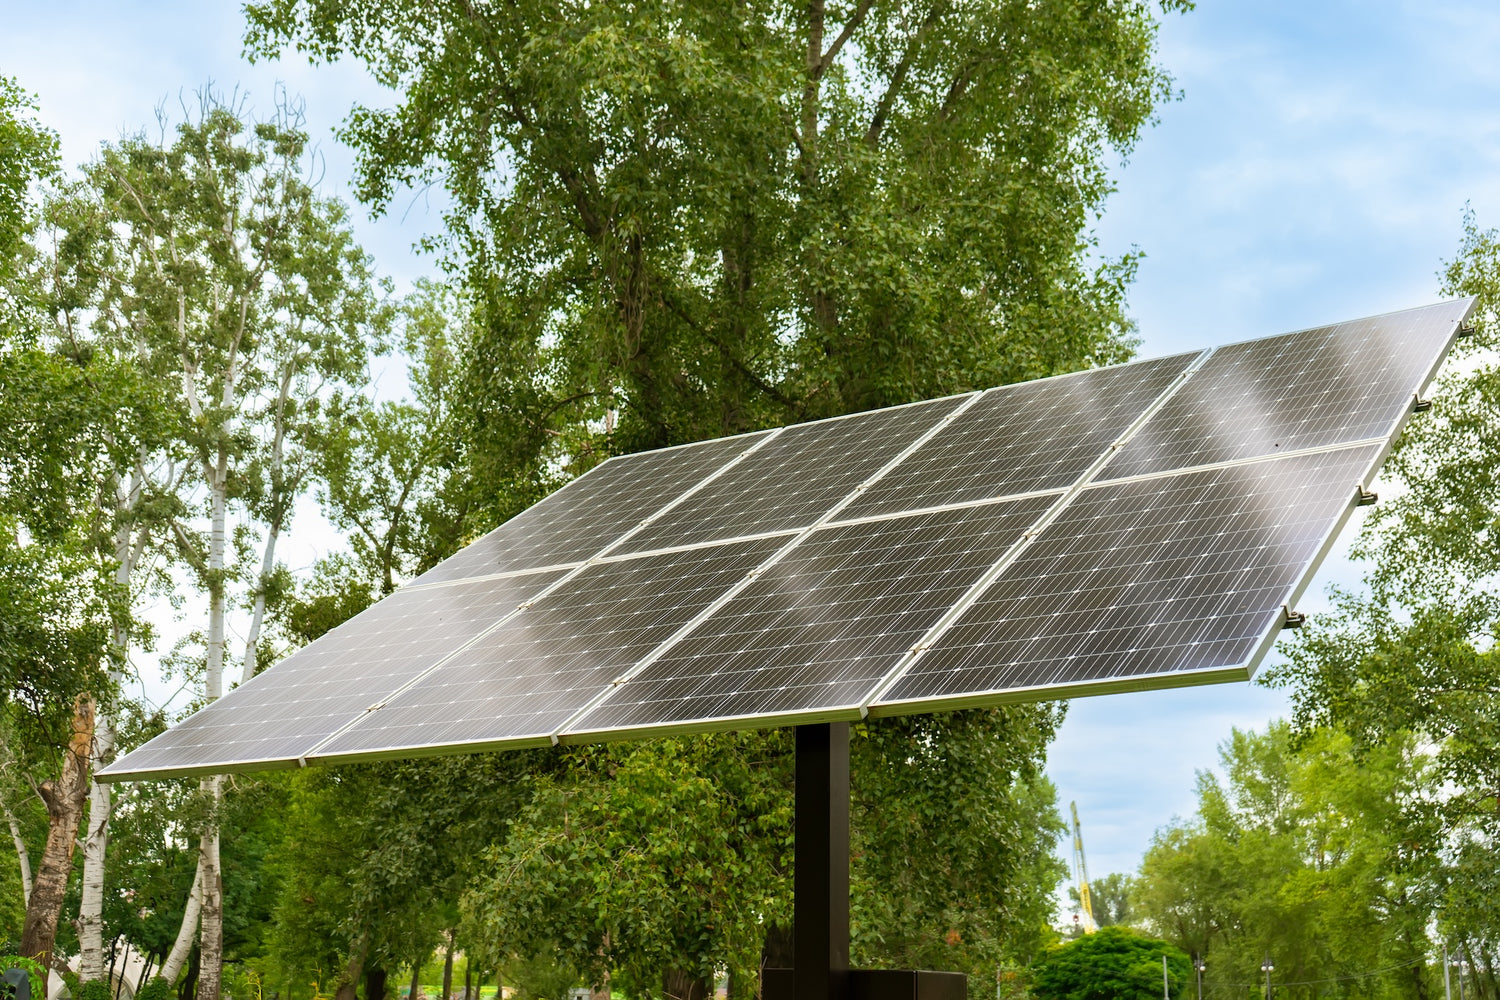 Puissance crête de vos panneaux et puissance pratique d'une installation solaire